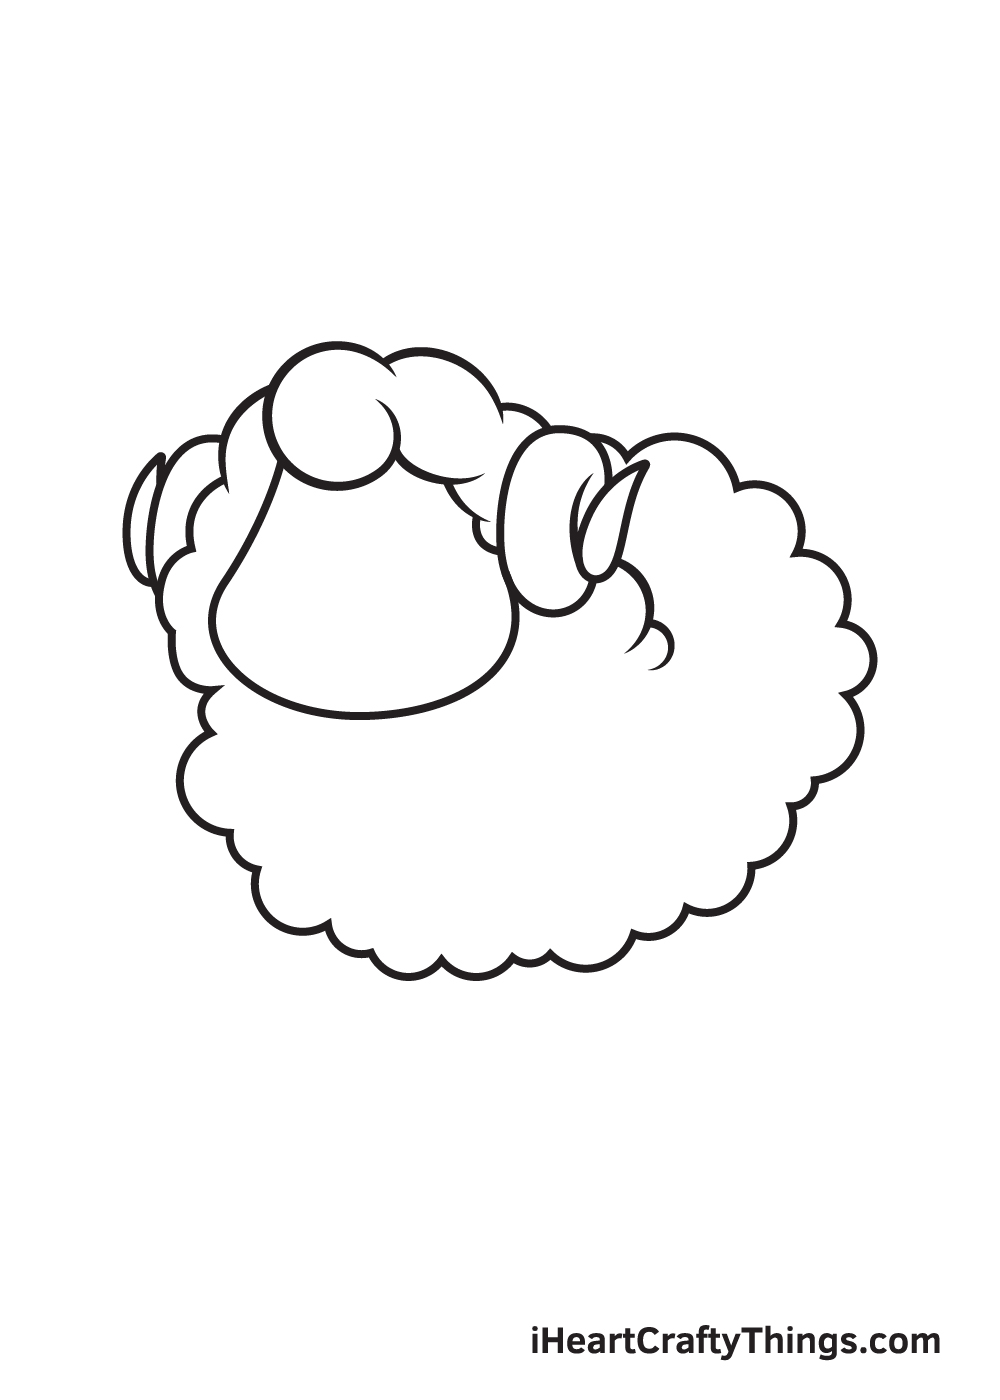 Bộ 25+ tranh tô màu con cừu siêu đẹp dành tặng bé yêu